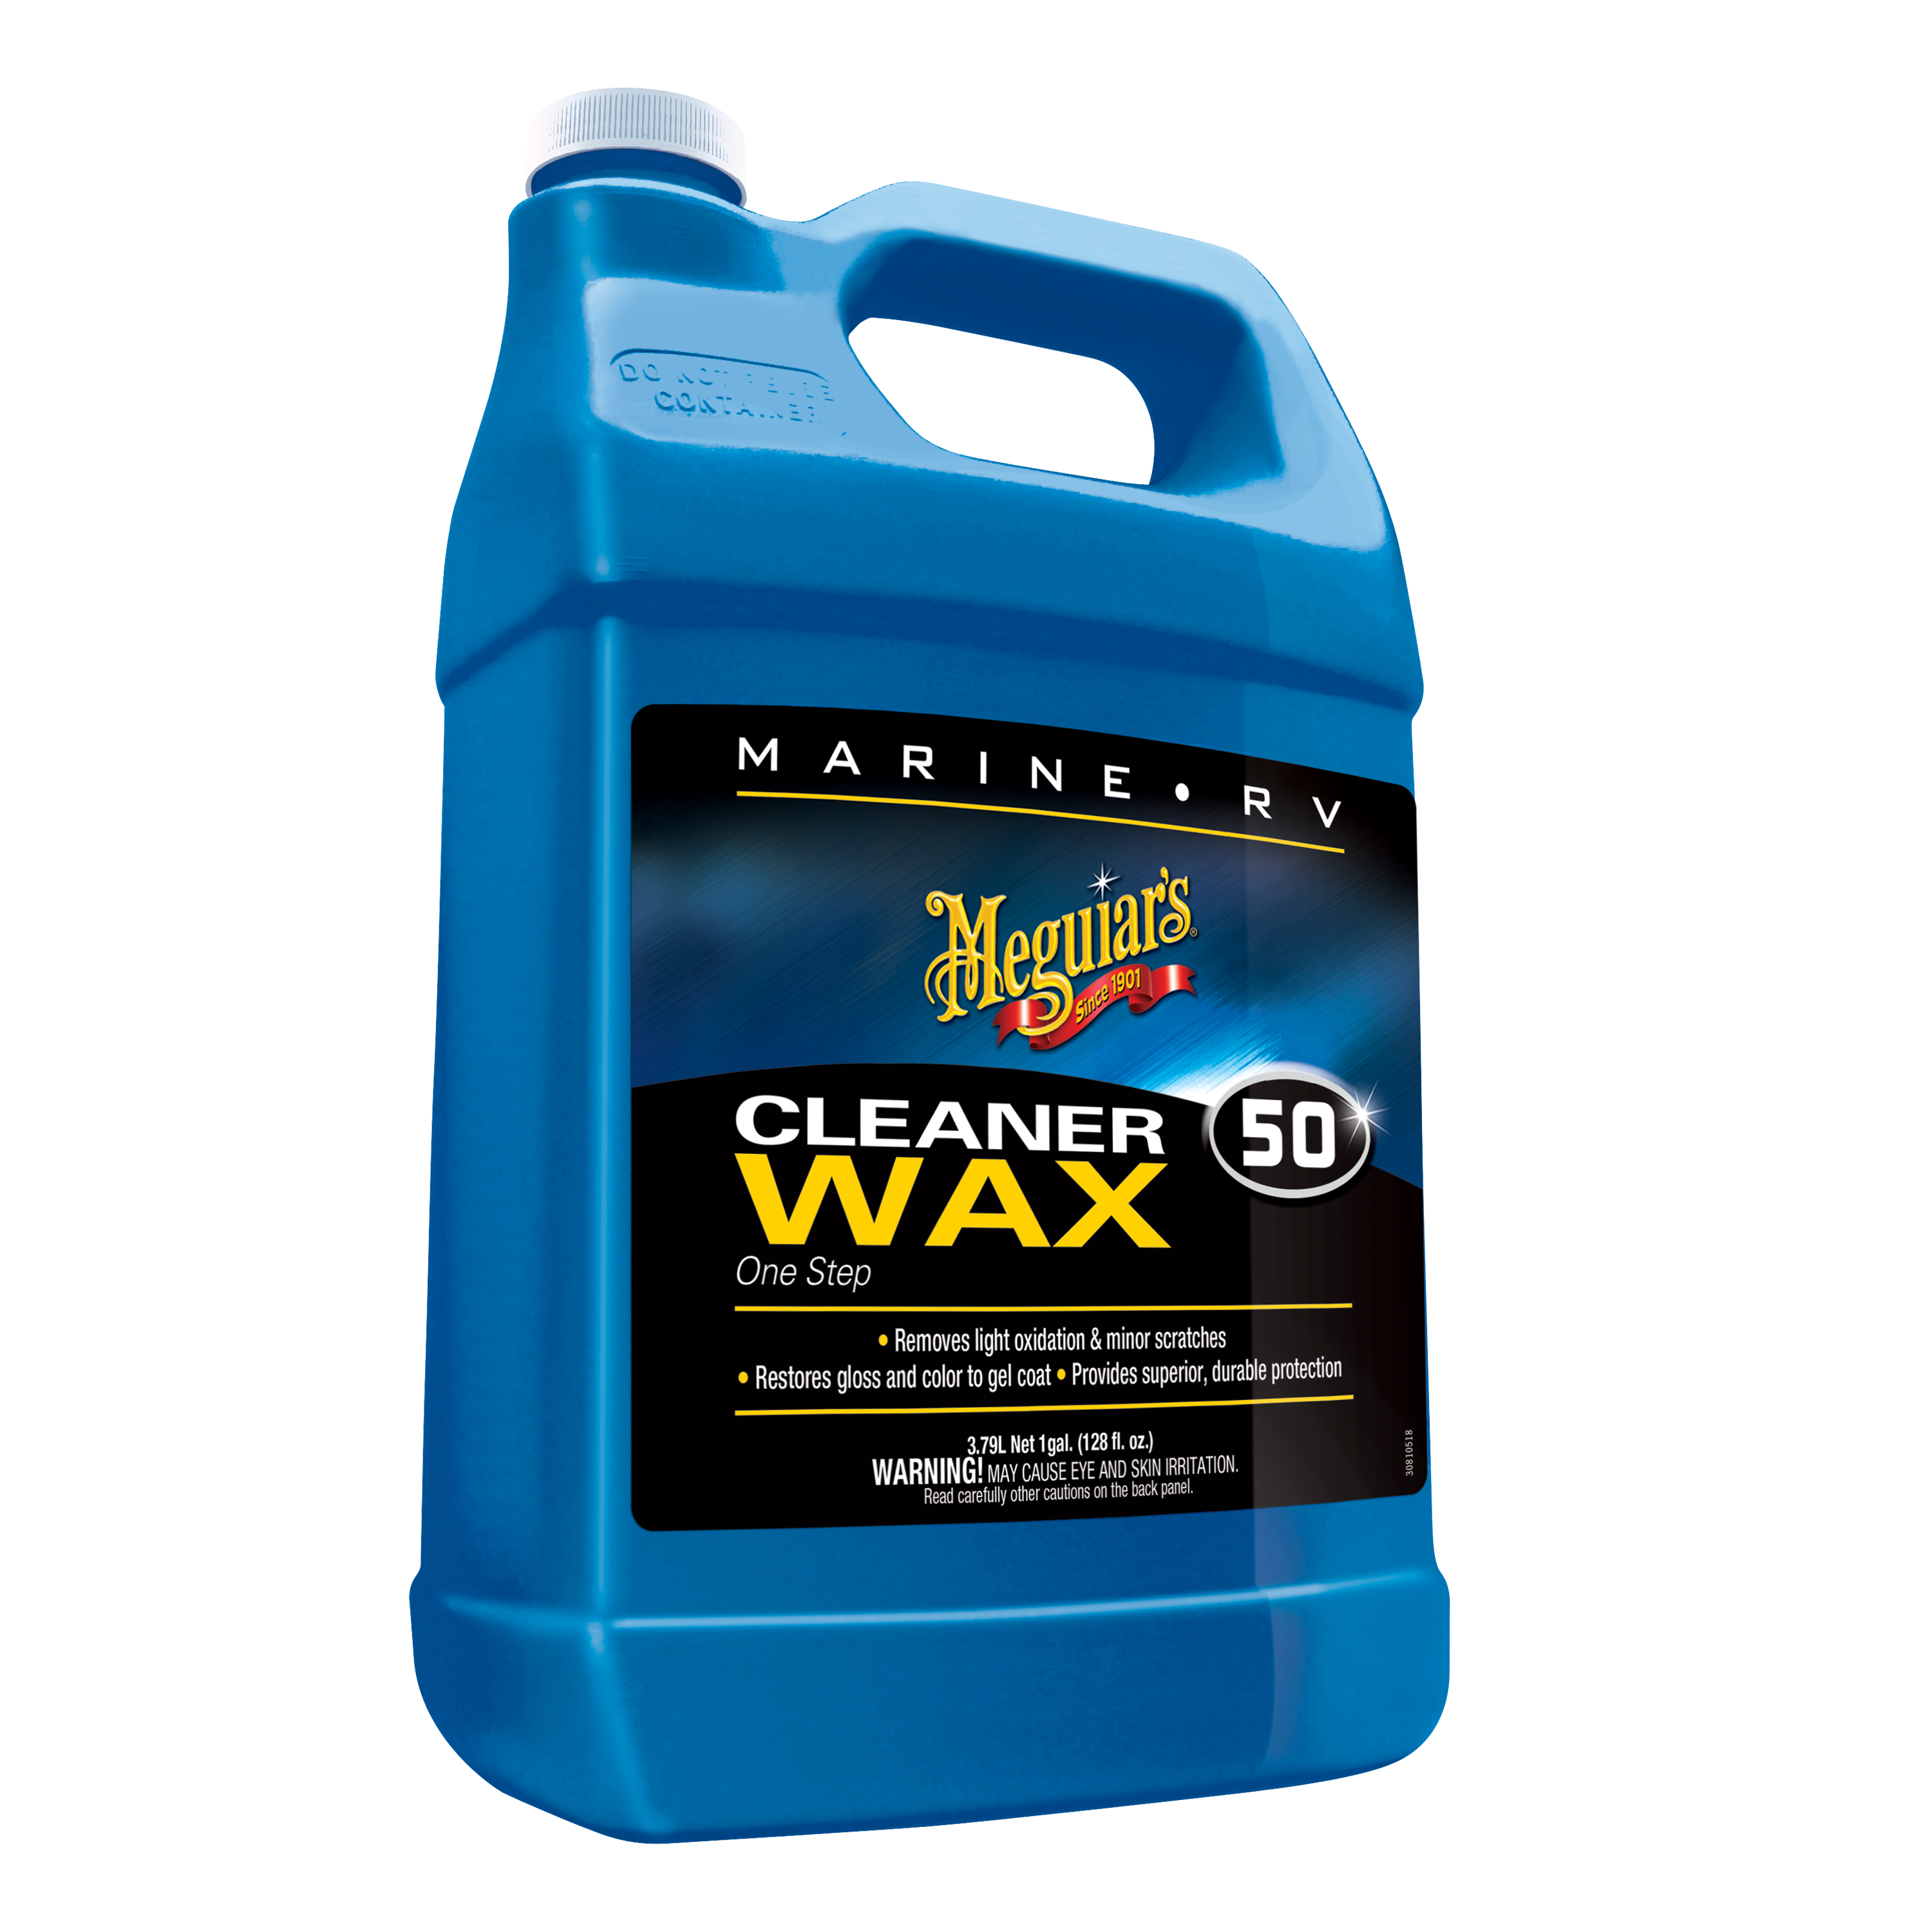 Meguiar's® Marine/RV One Step Cleaner Wax, M5001, 1 Gallon, Liquid